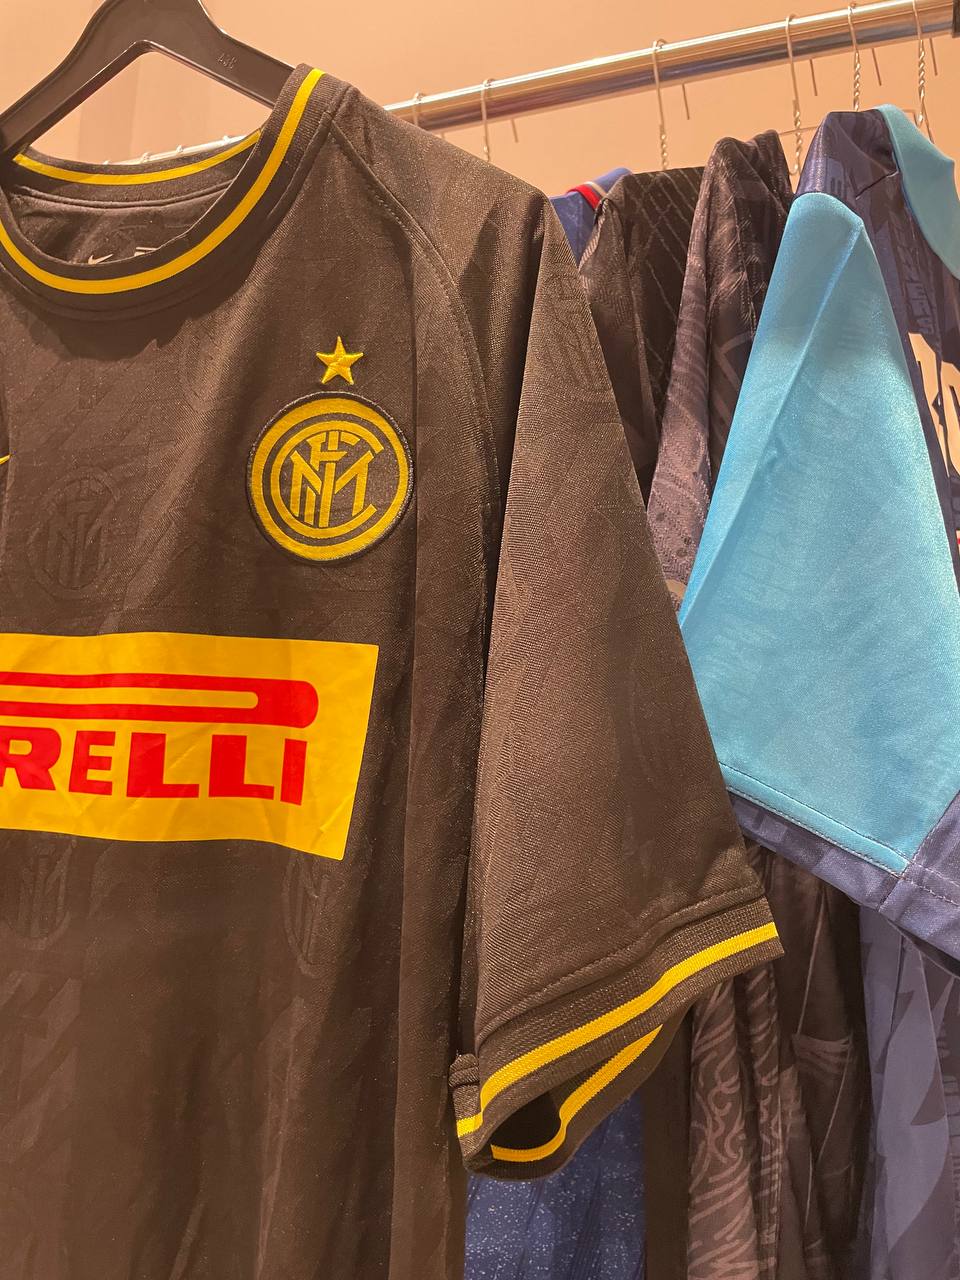 Inter Milan third kit